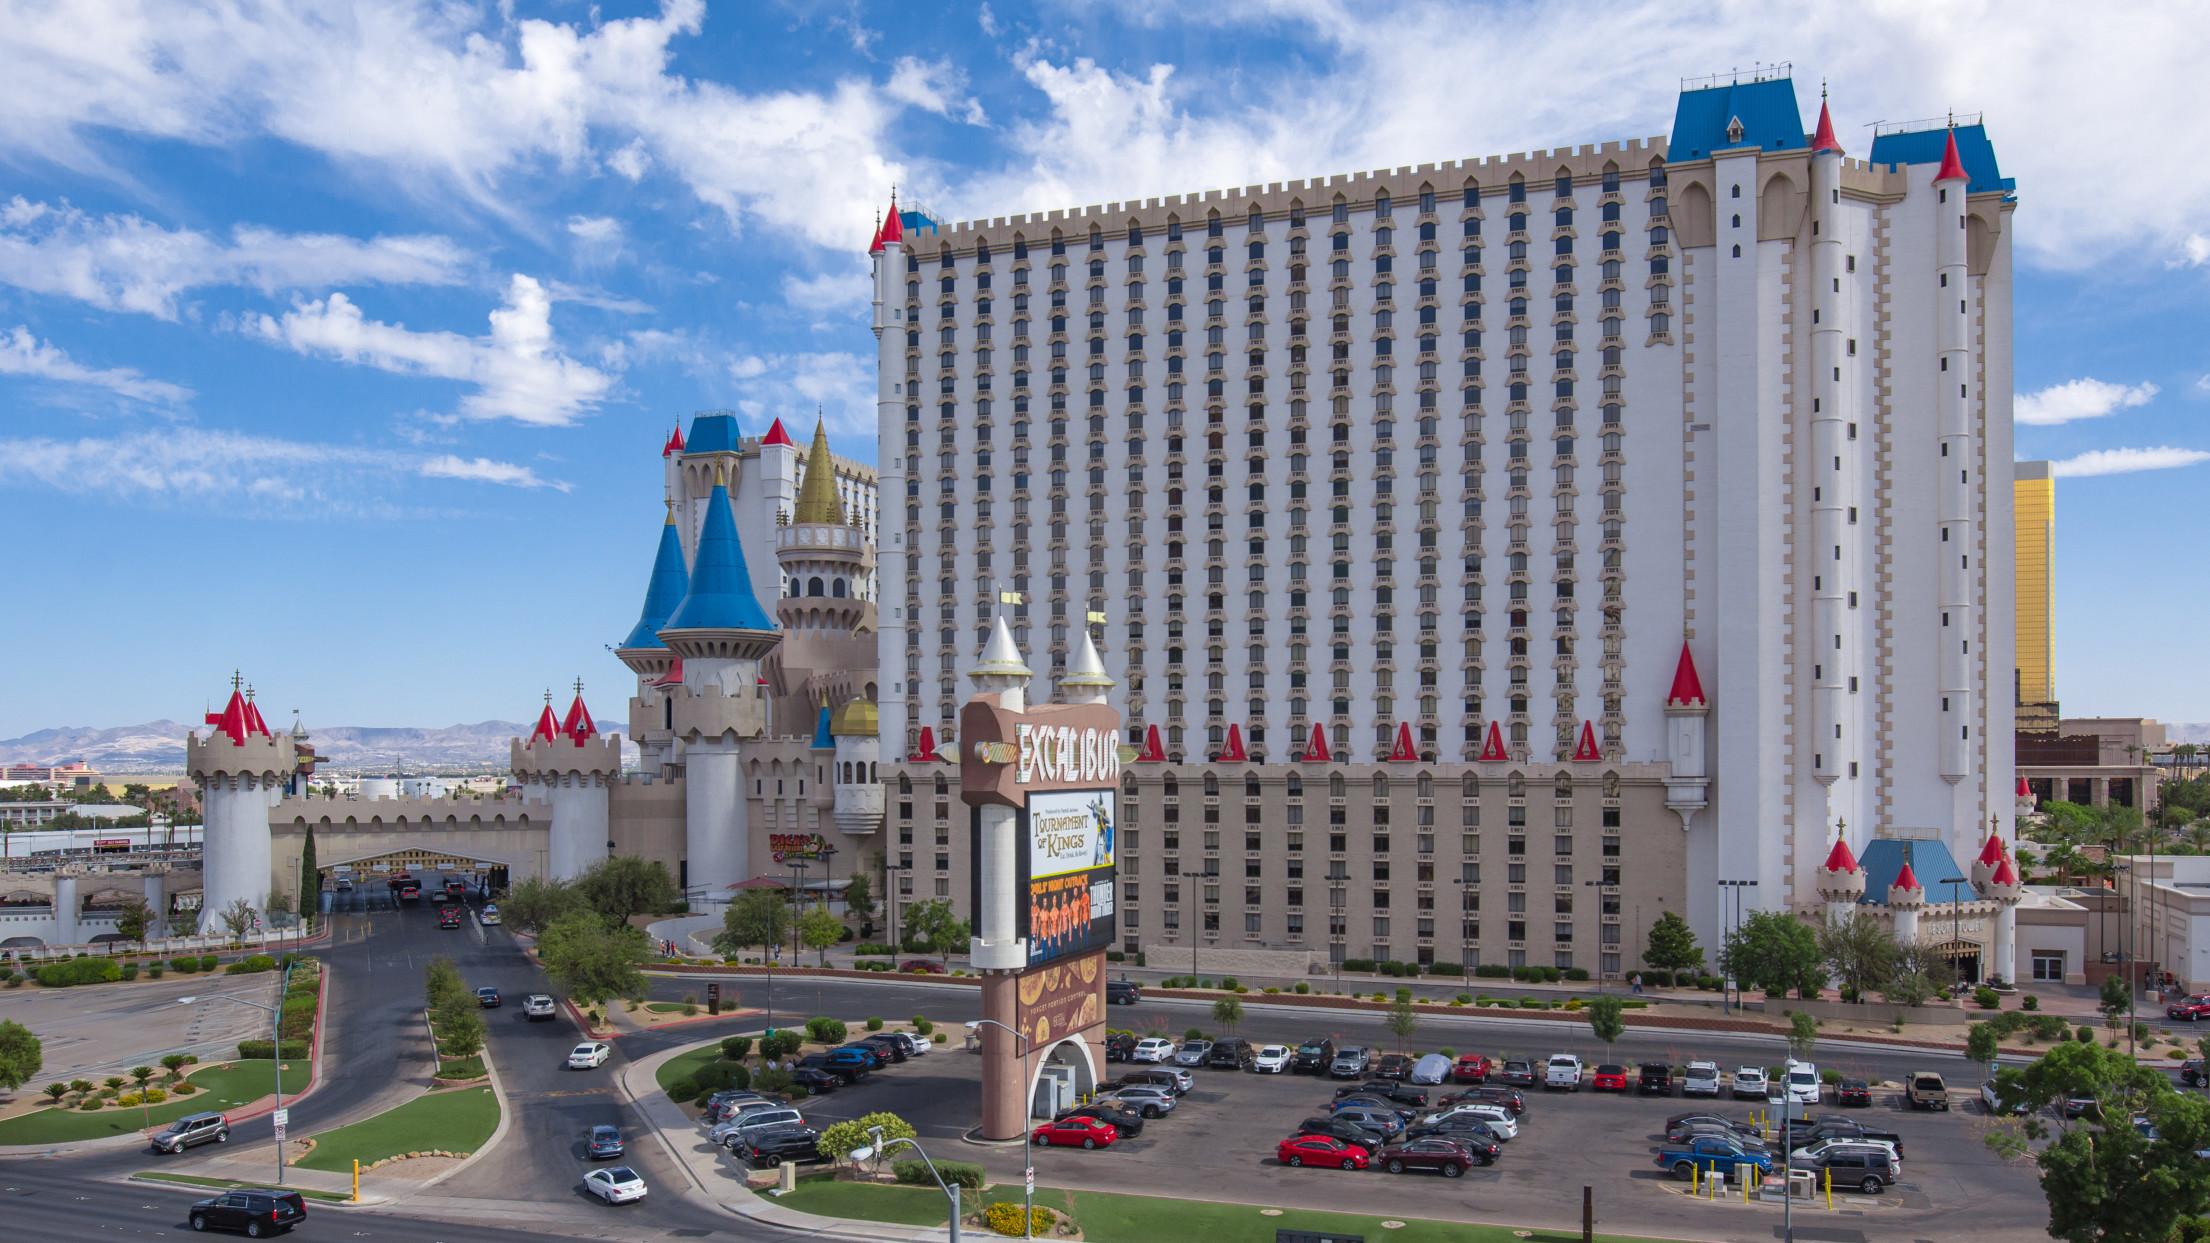 Excalibur Hotel & Casino, Las Vegas, Nevada